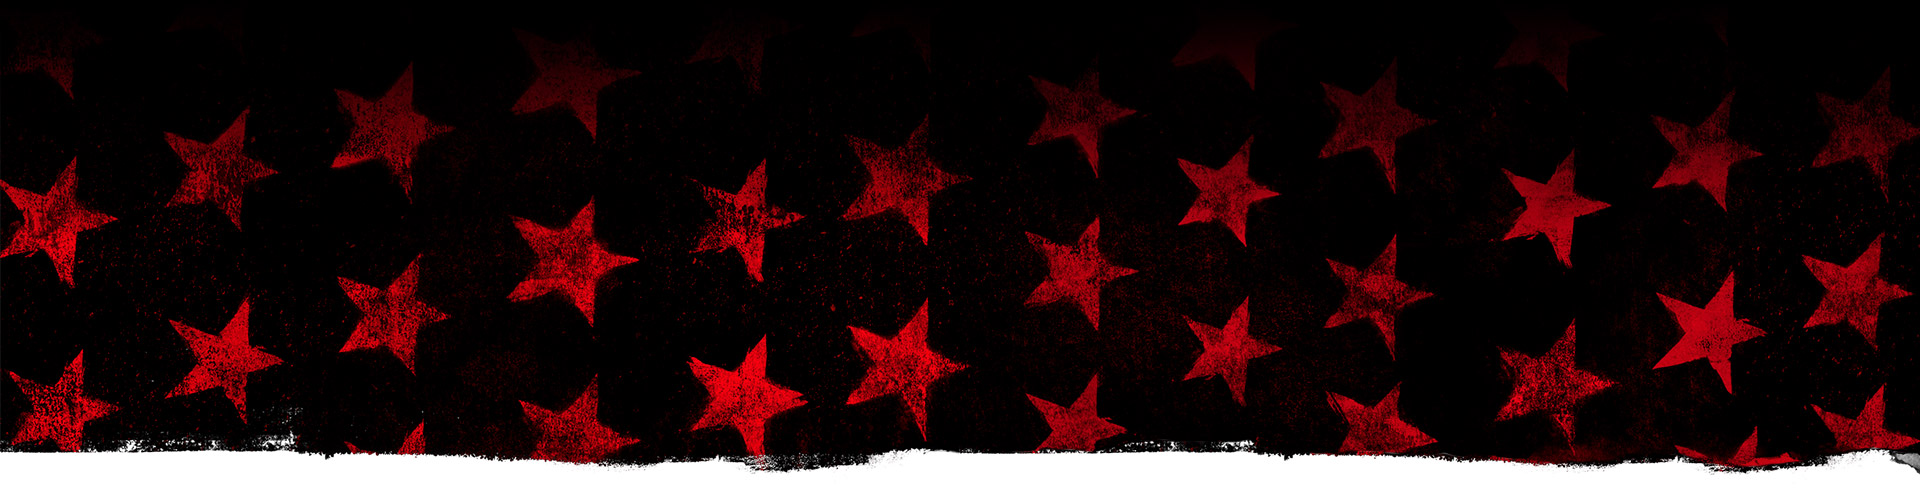 Étoiles rouges sur fond noir.